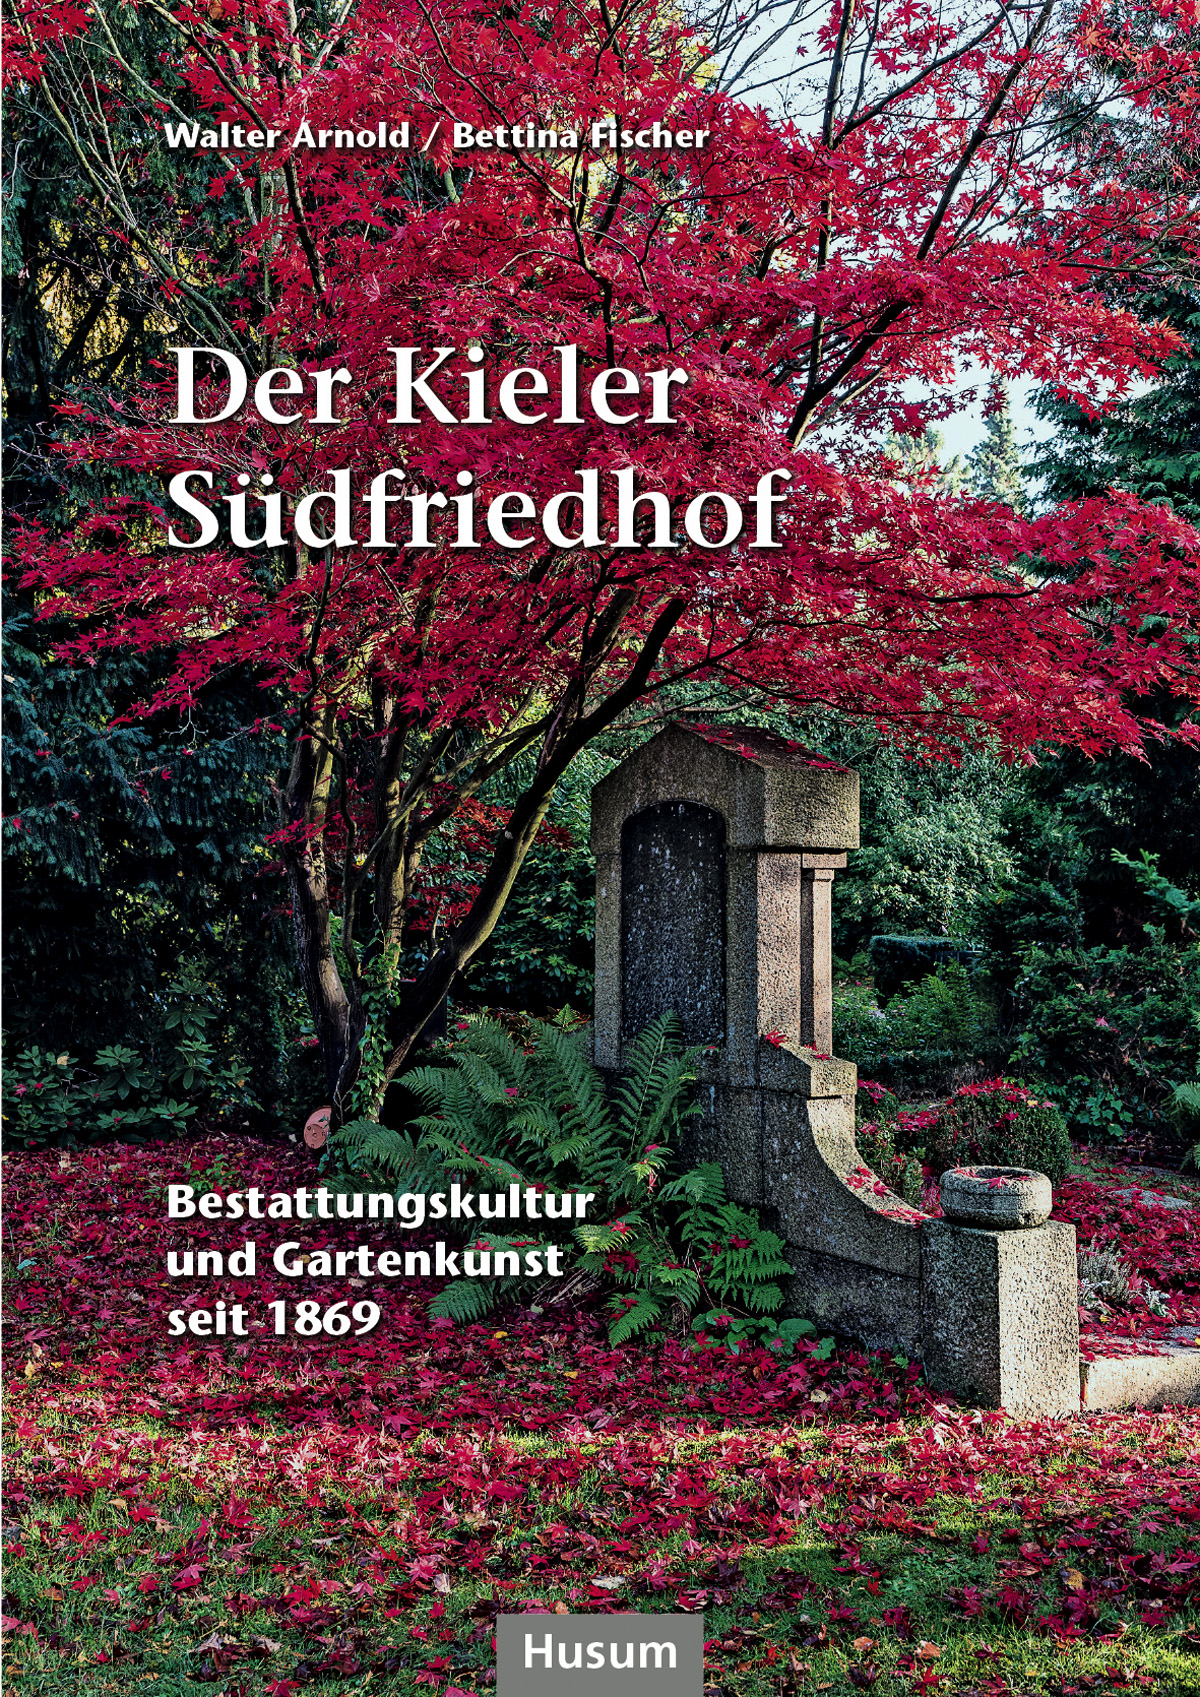 Walter Arnold; Bettina Fischer / Der Kieler Südfriedhof - Bild 1 von 1